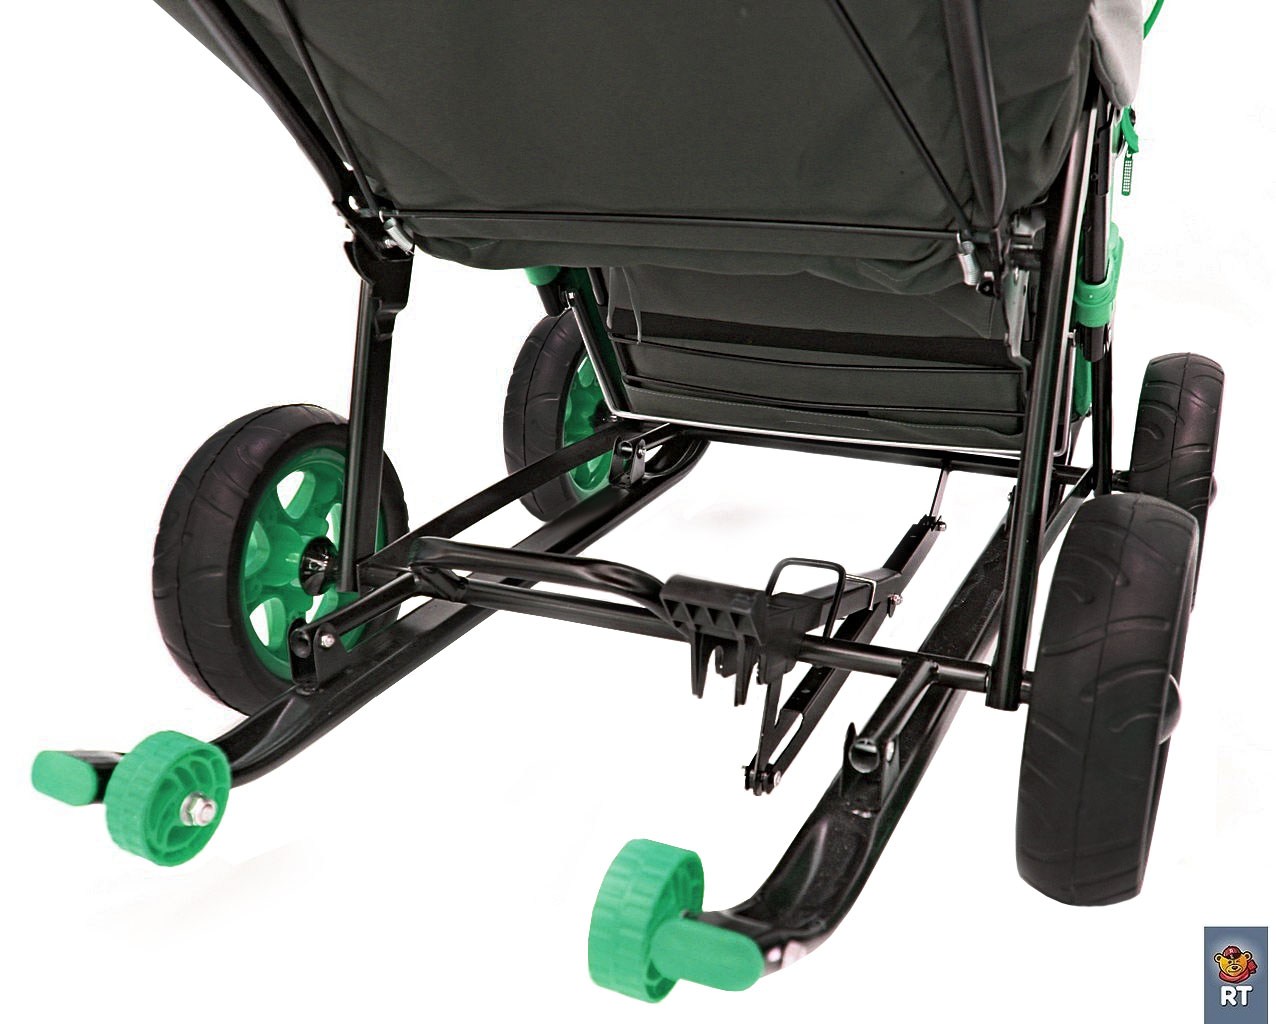 Санки-коляска Snow Galaxy City-2-1, дизайн - Серый Зайка на зелёном, на больших надувных колёсах, сумка и варежки  